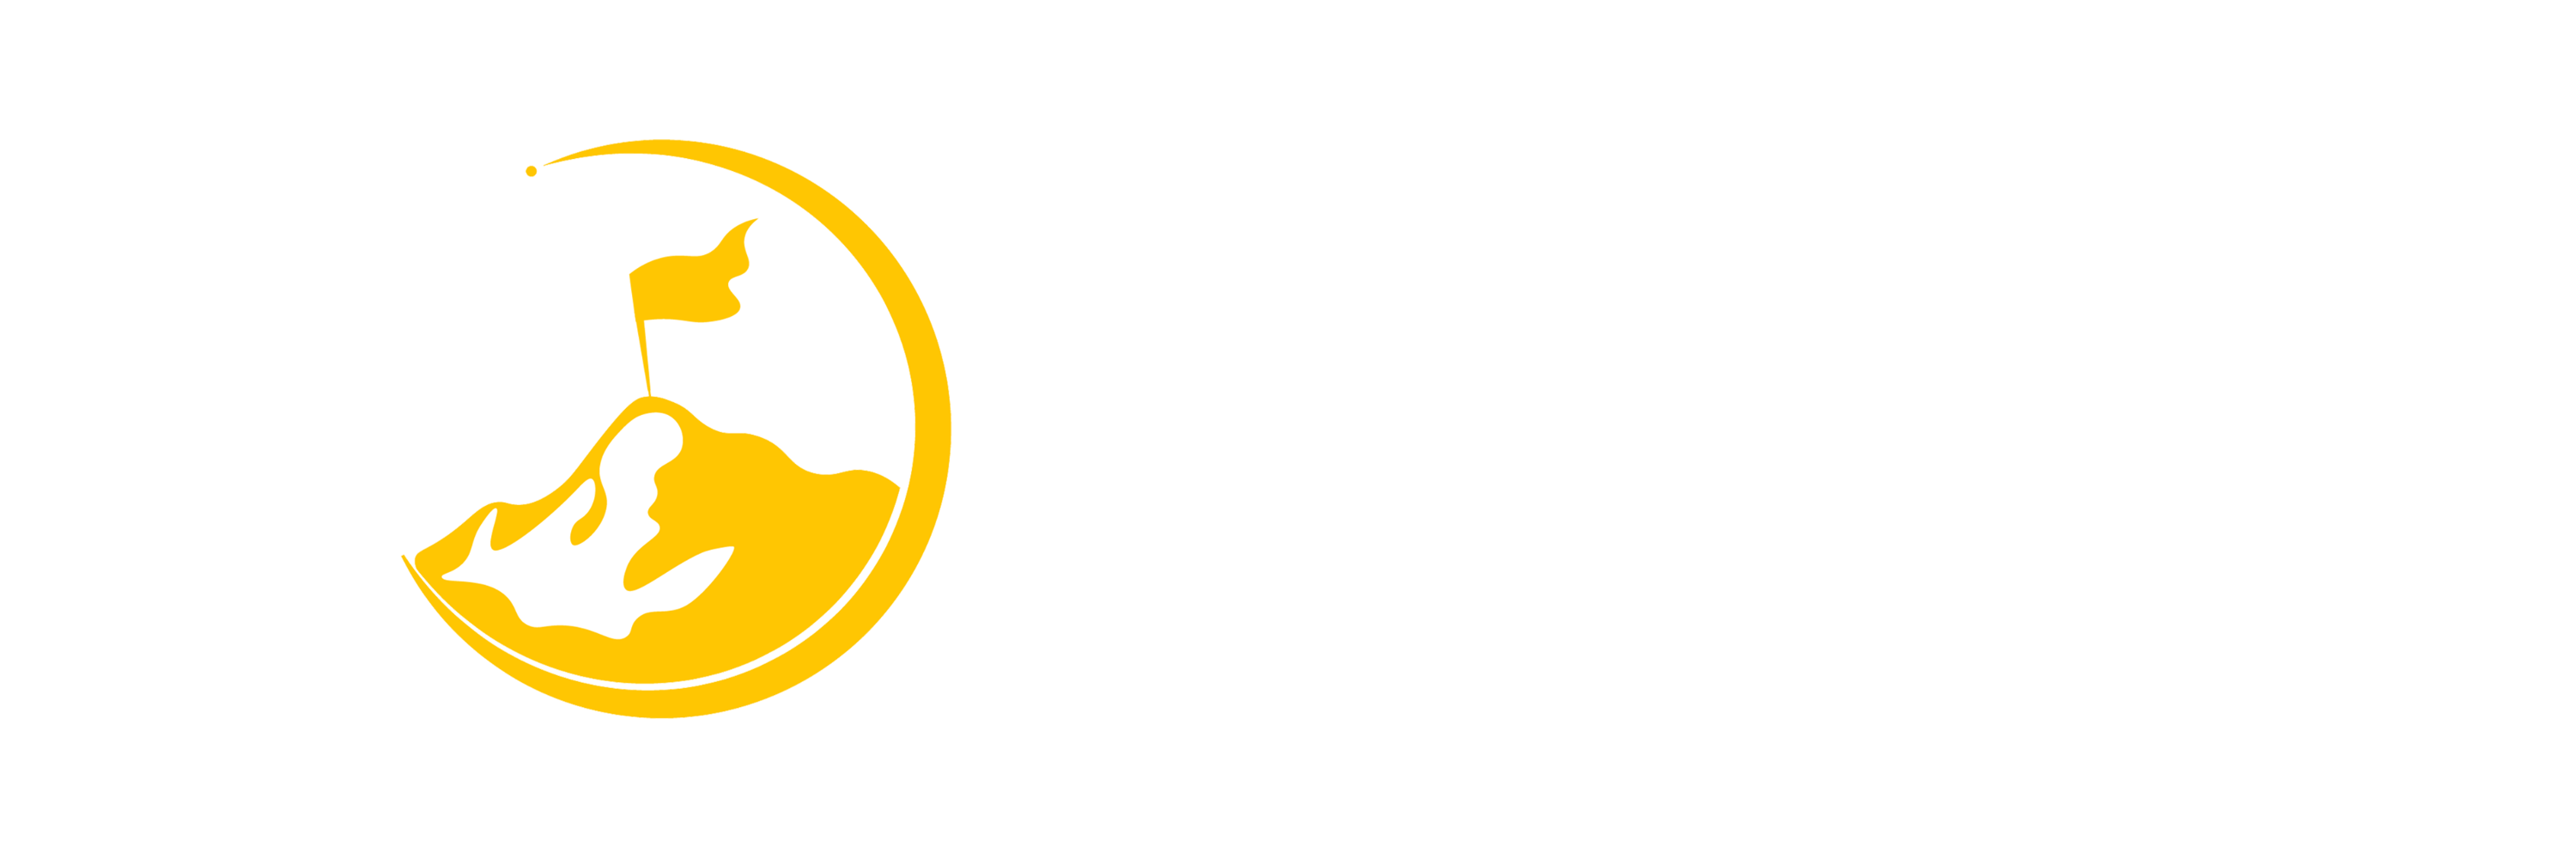 Líderes del Futuro | Nacional - AIESEC en Argentina